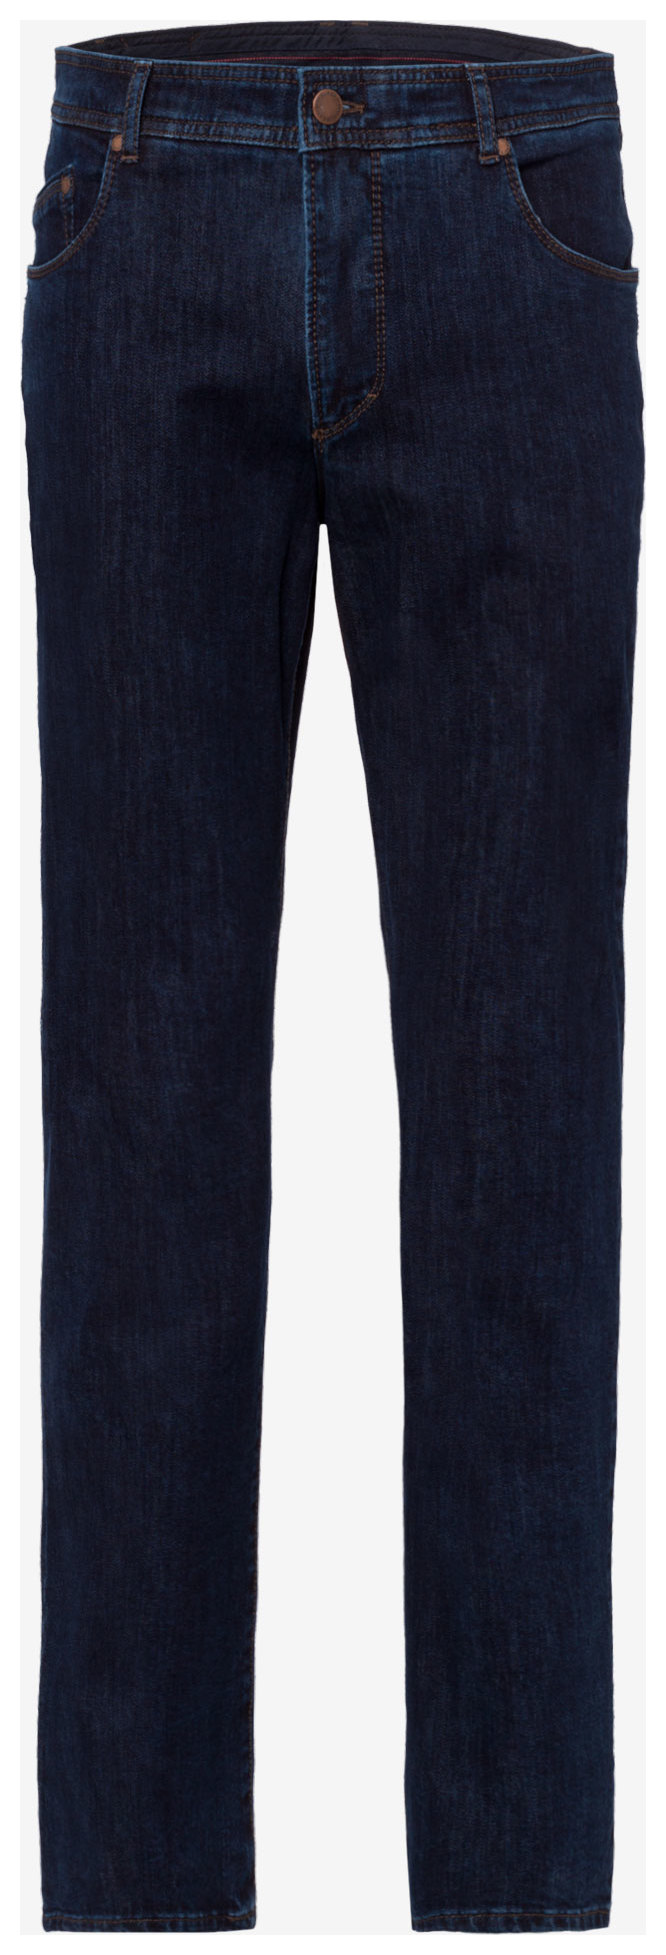 Brax Ken 340 Jeans Blue Stone | Jan Rozing Men\'s Fashion